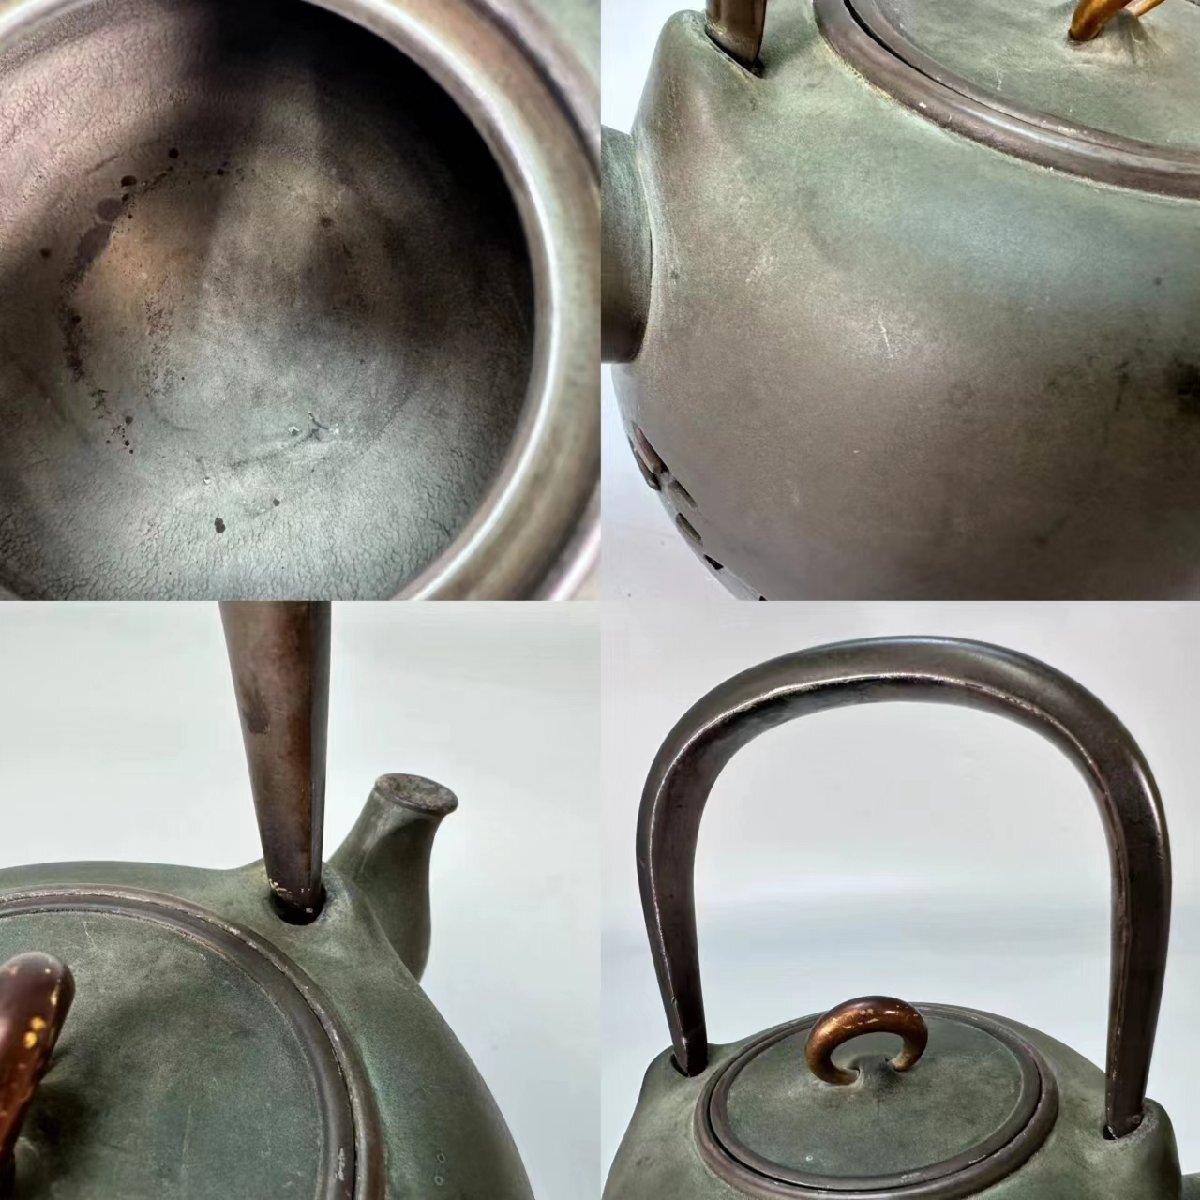 H0654 original silver made silver bin ... tea utensils . tea utensils small teapot tea note hot water . tea utensils -ply 800g